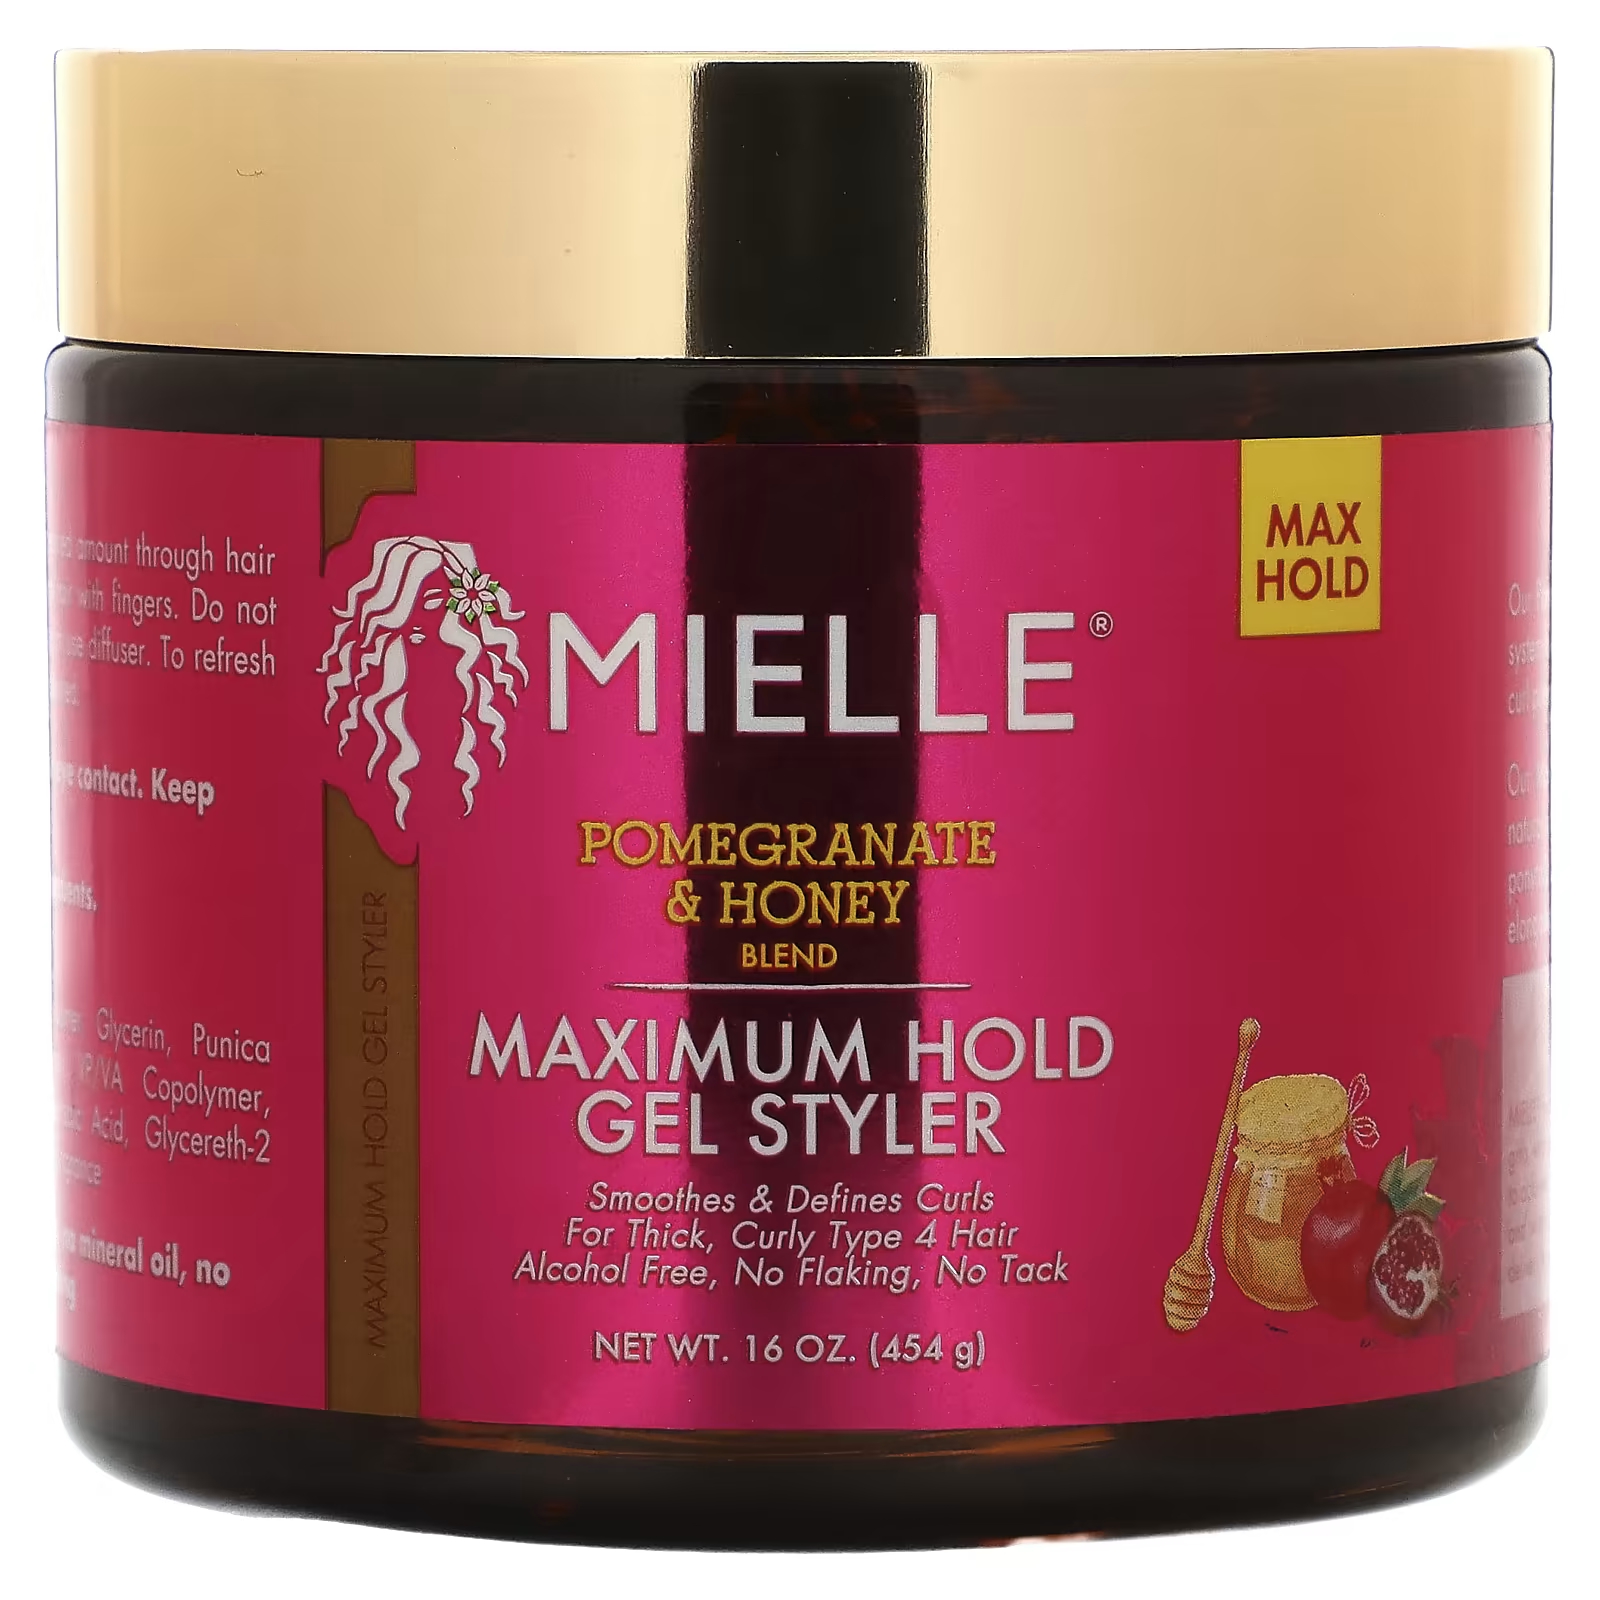 Гель-стайлер Mielle Maximum Hold Pomegranate & Honey Blend, 454 г